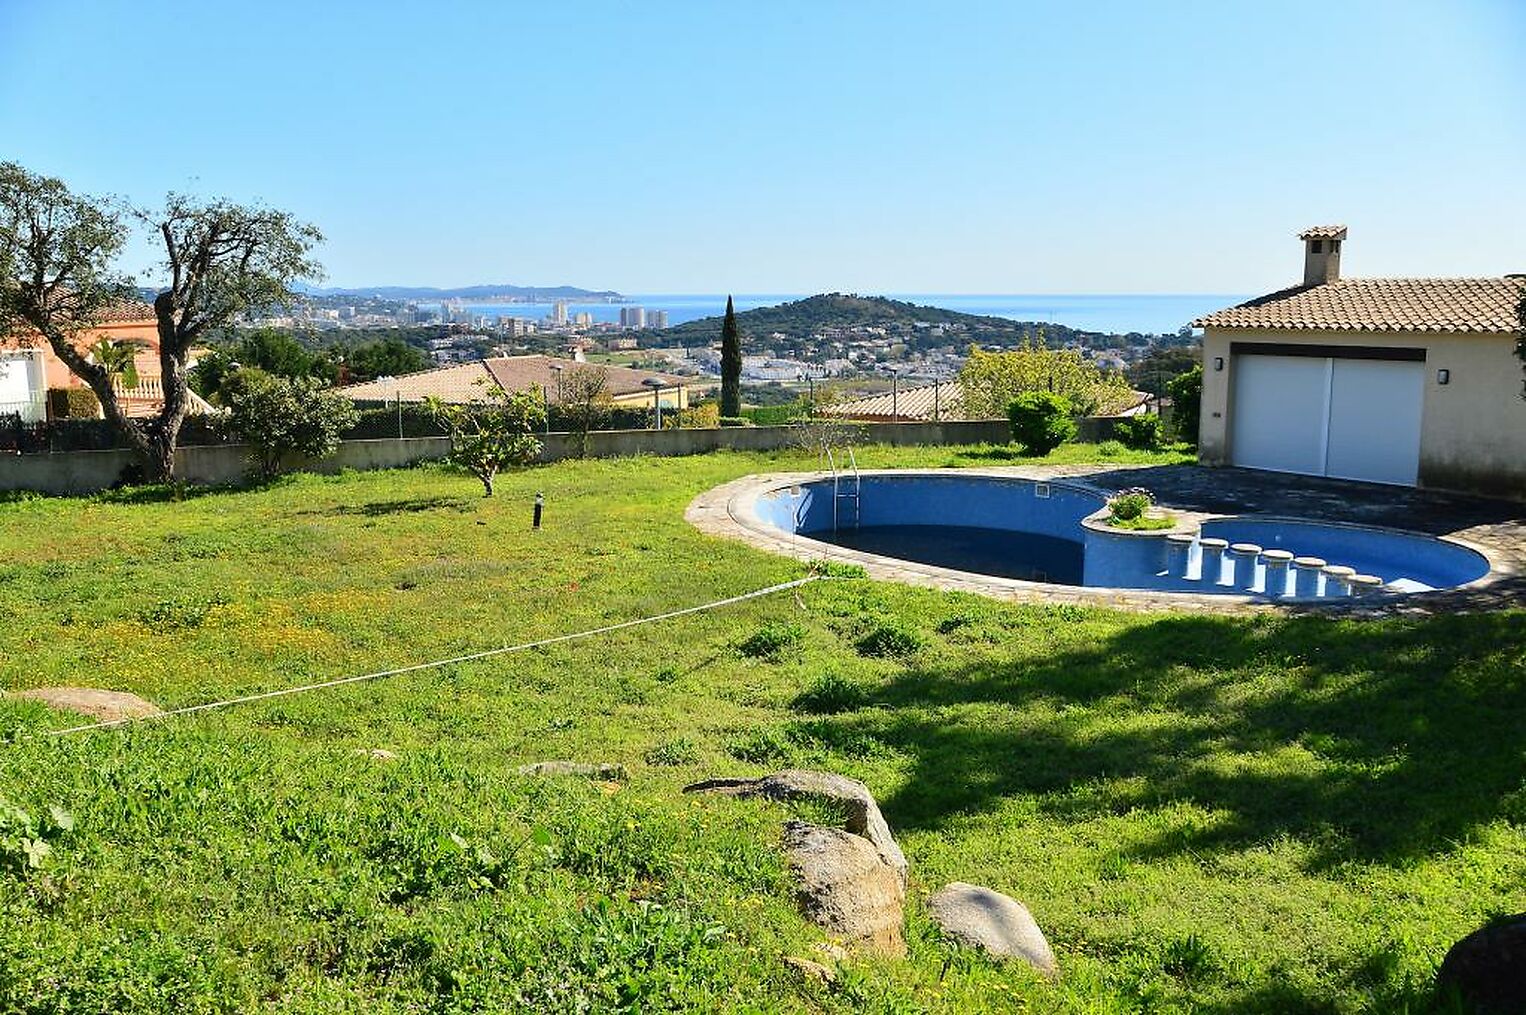 Magnifique Villa avec très jolies vues sur la mer, située à Sant Feliu de Guíxols.